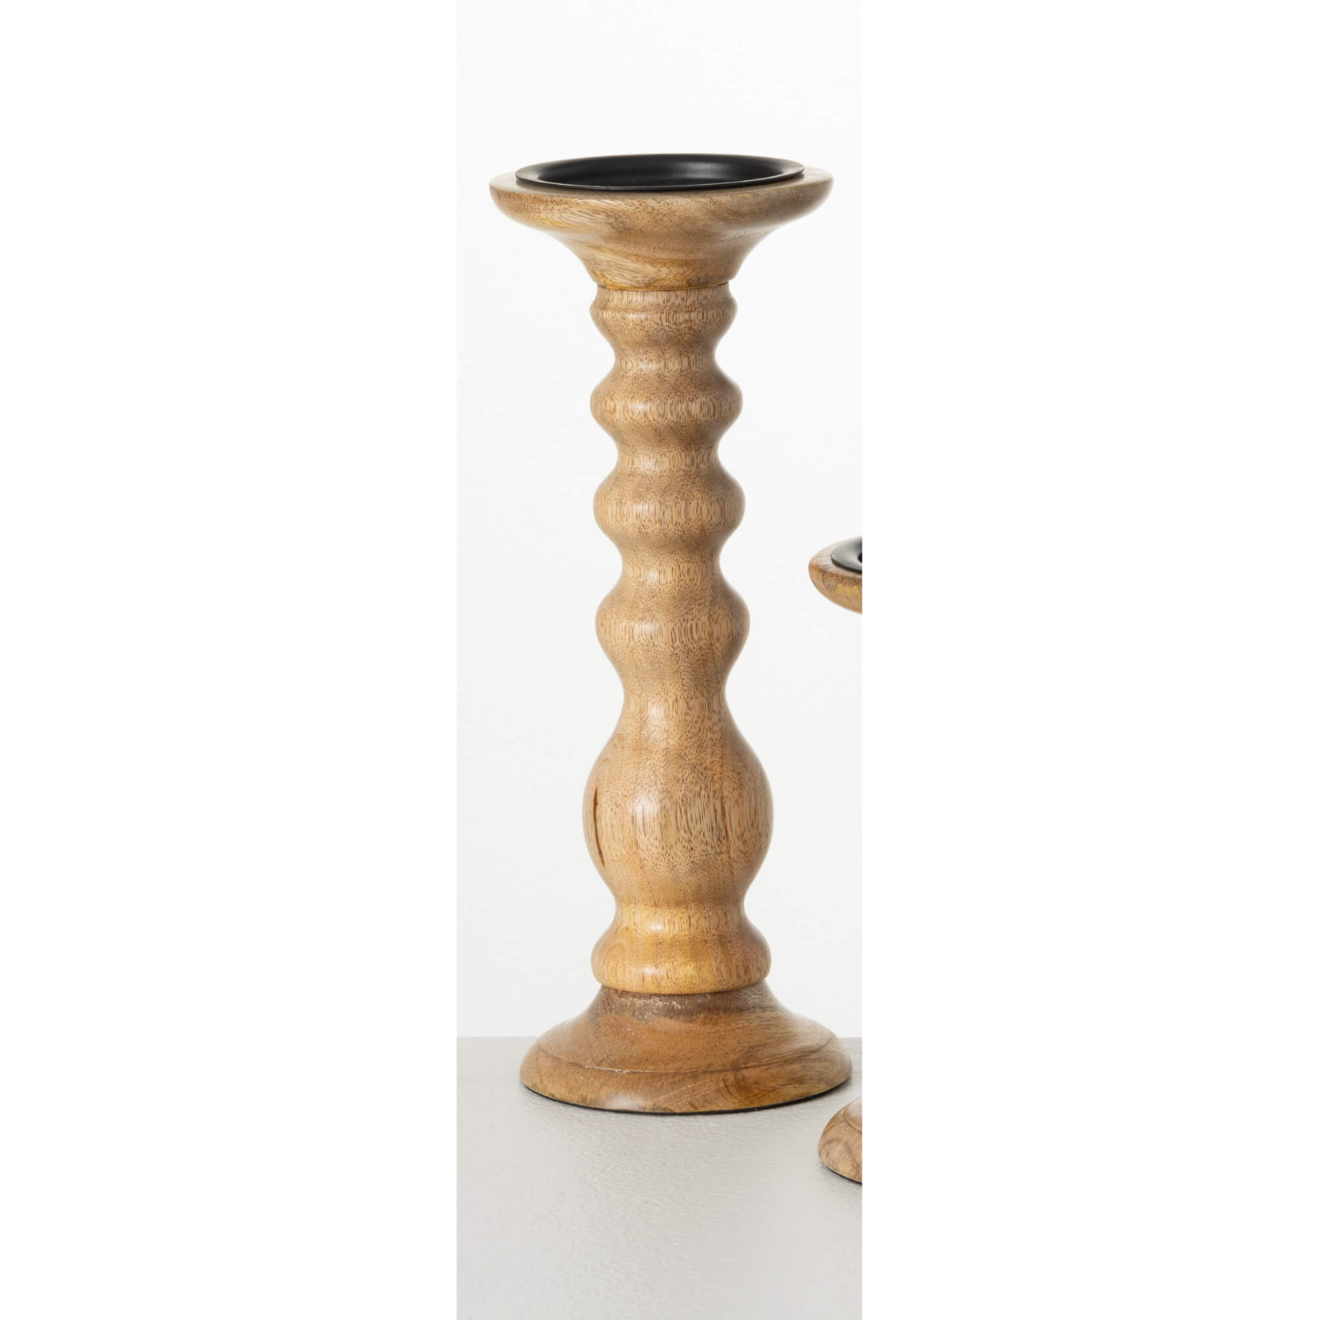 Turned-Wood Pedestal/Candle Holder